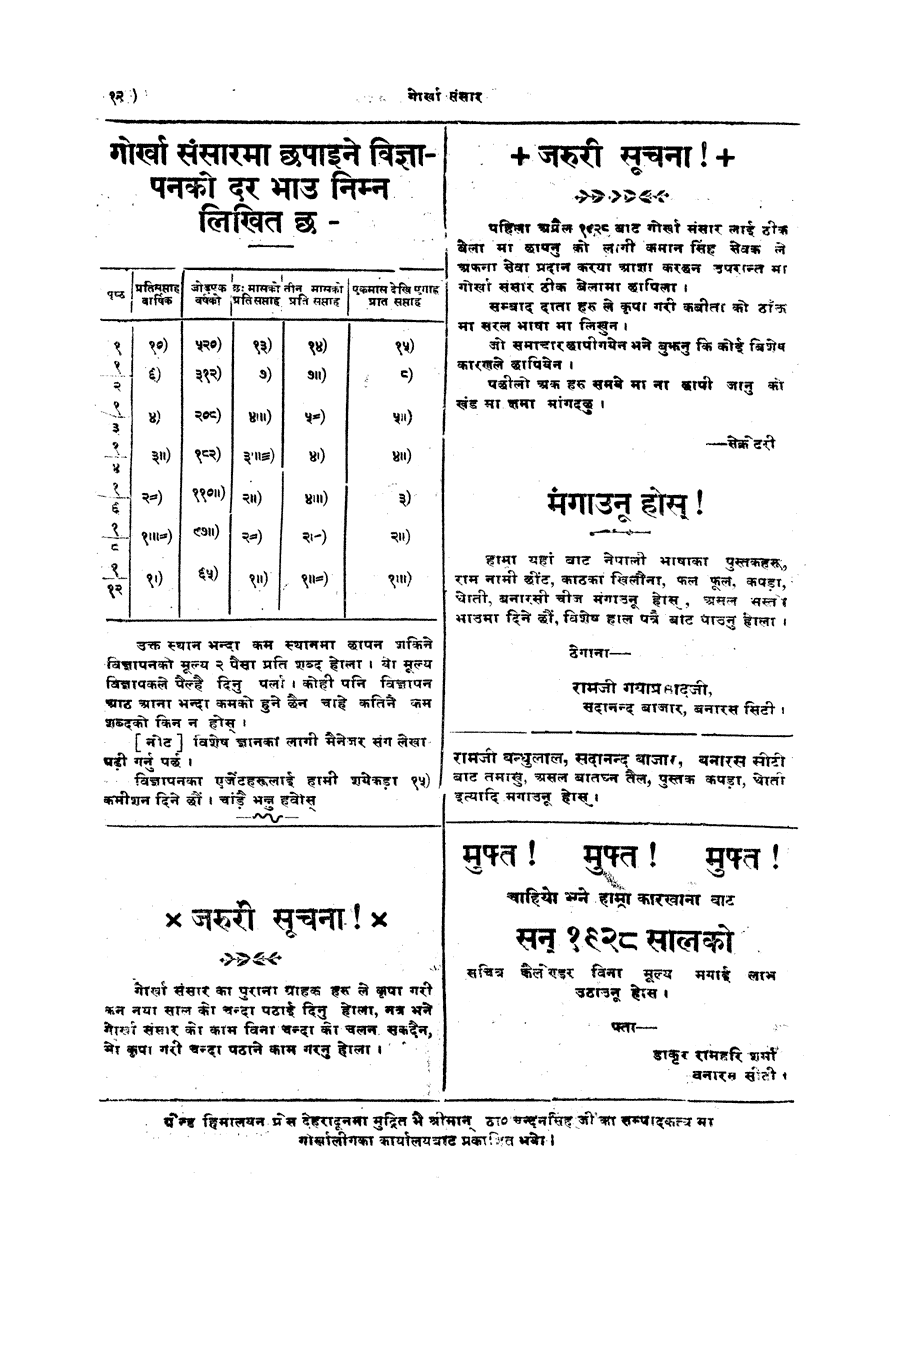 Gorkha Sansar, 27 April 1928, page 12